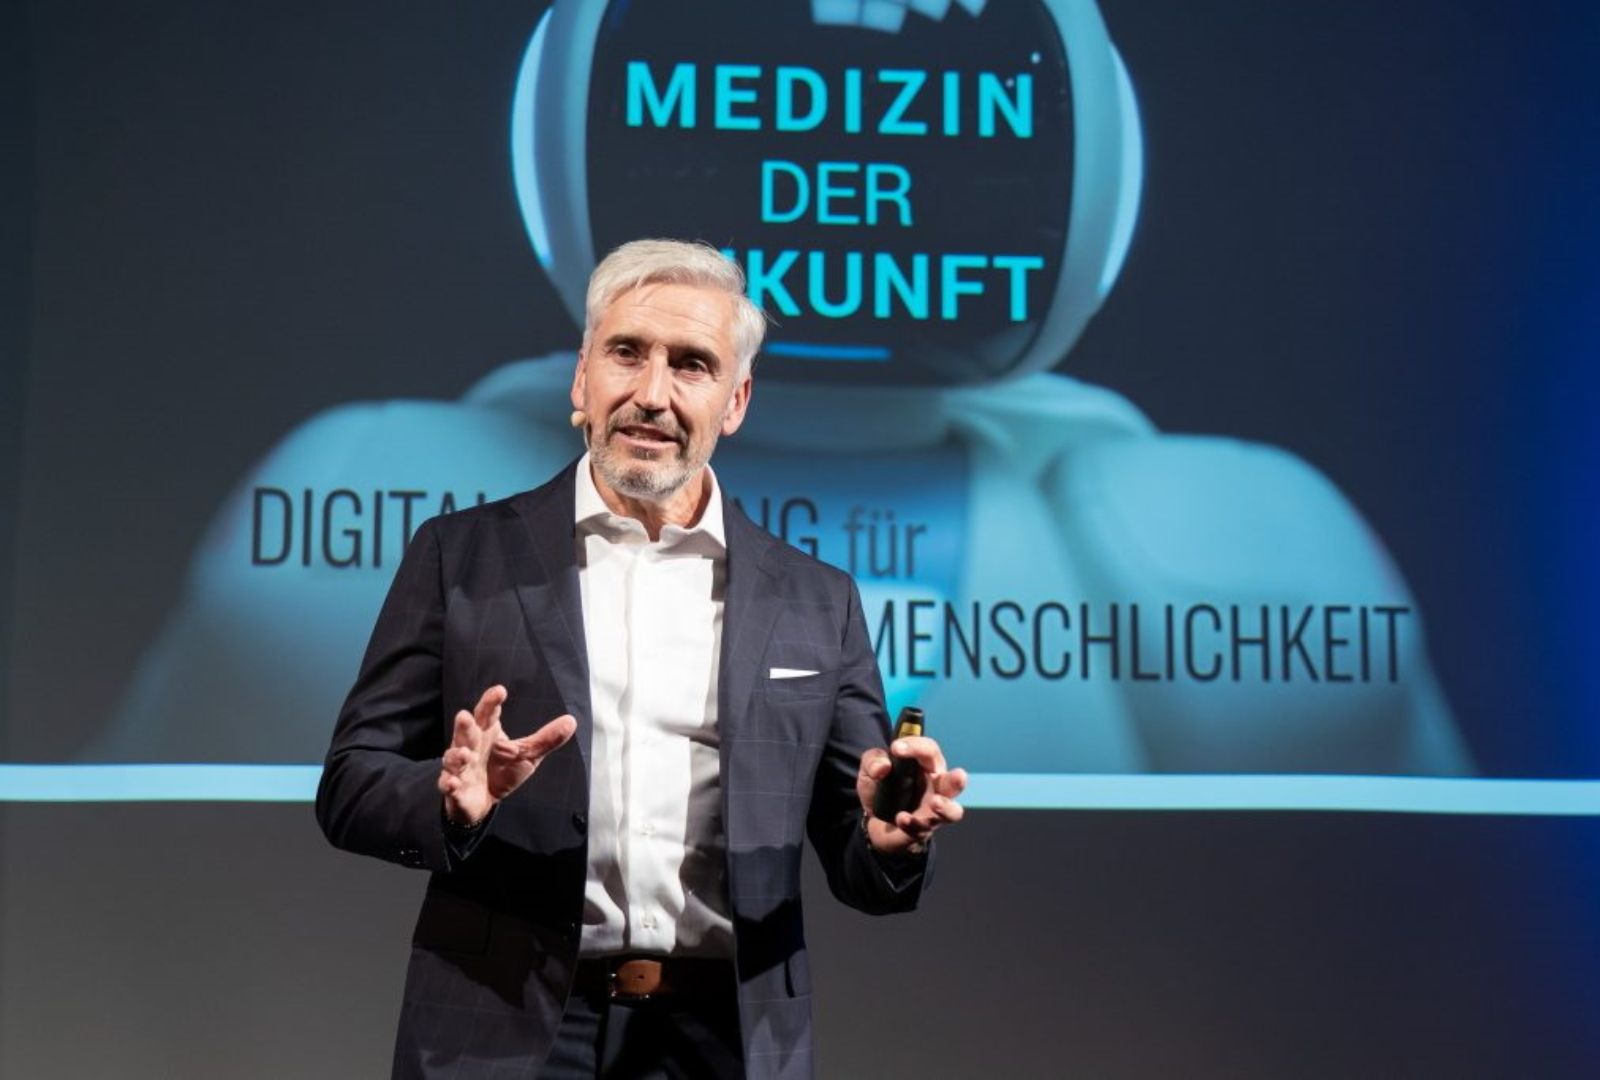 Dr. Gerd Wirtz – Digitalisierung der Medizin menschlich betrachtet